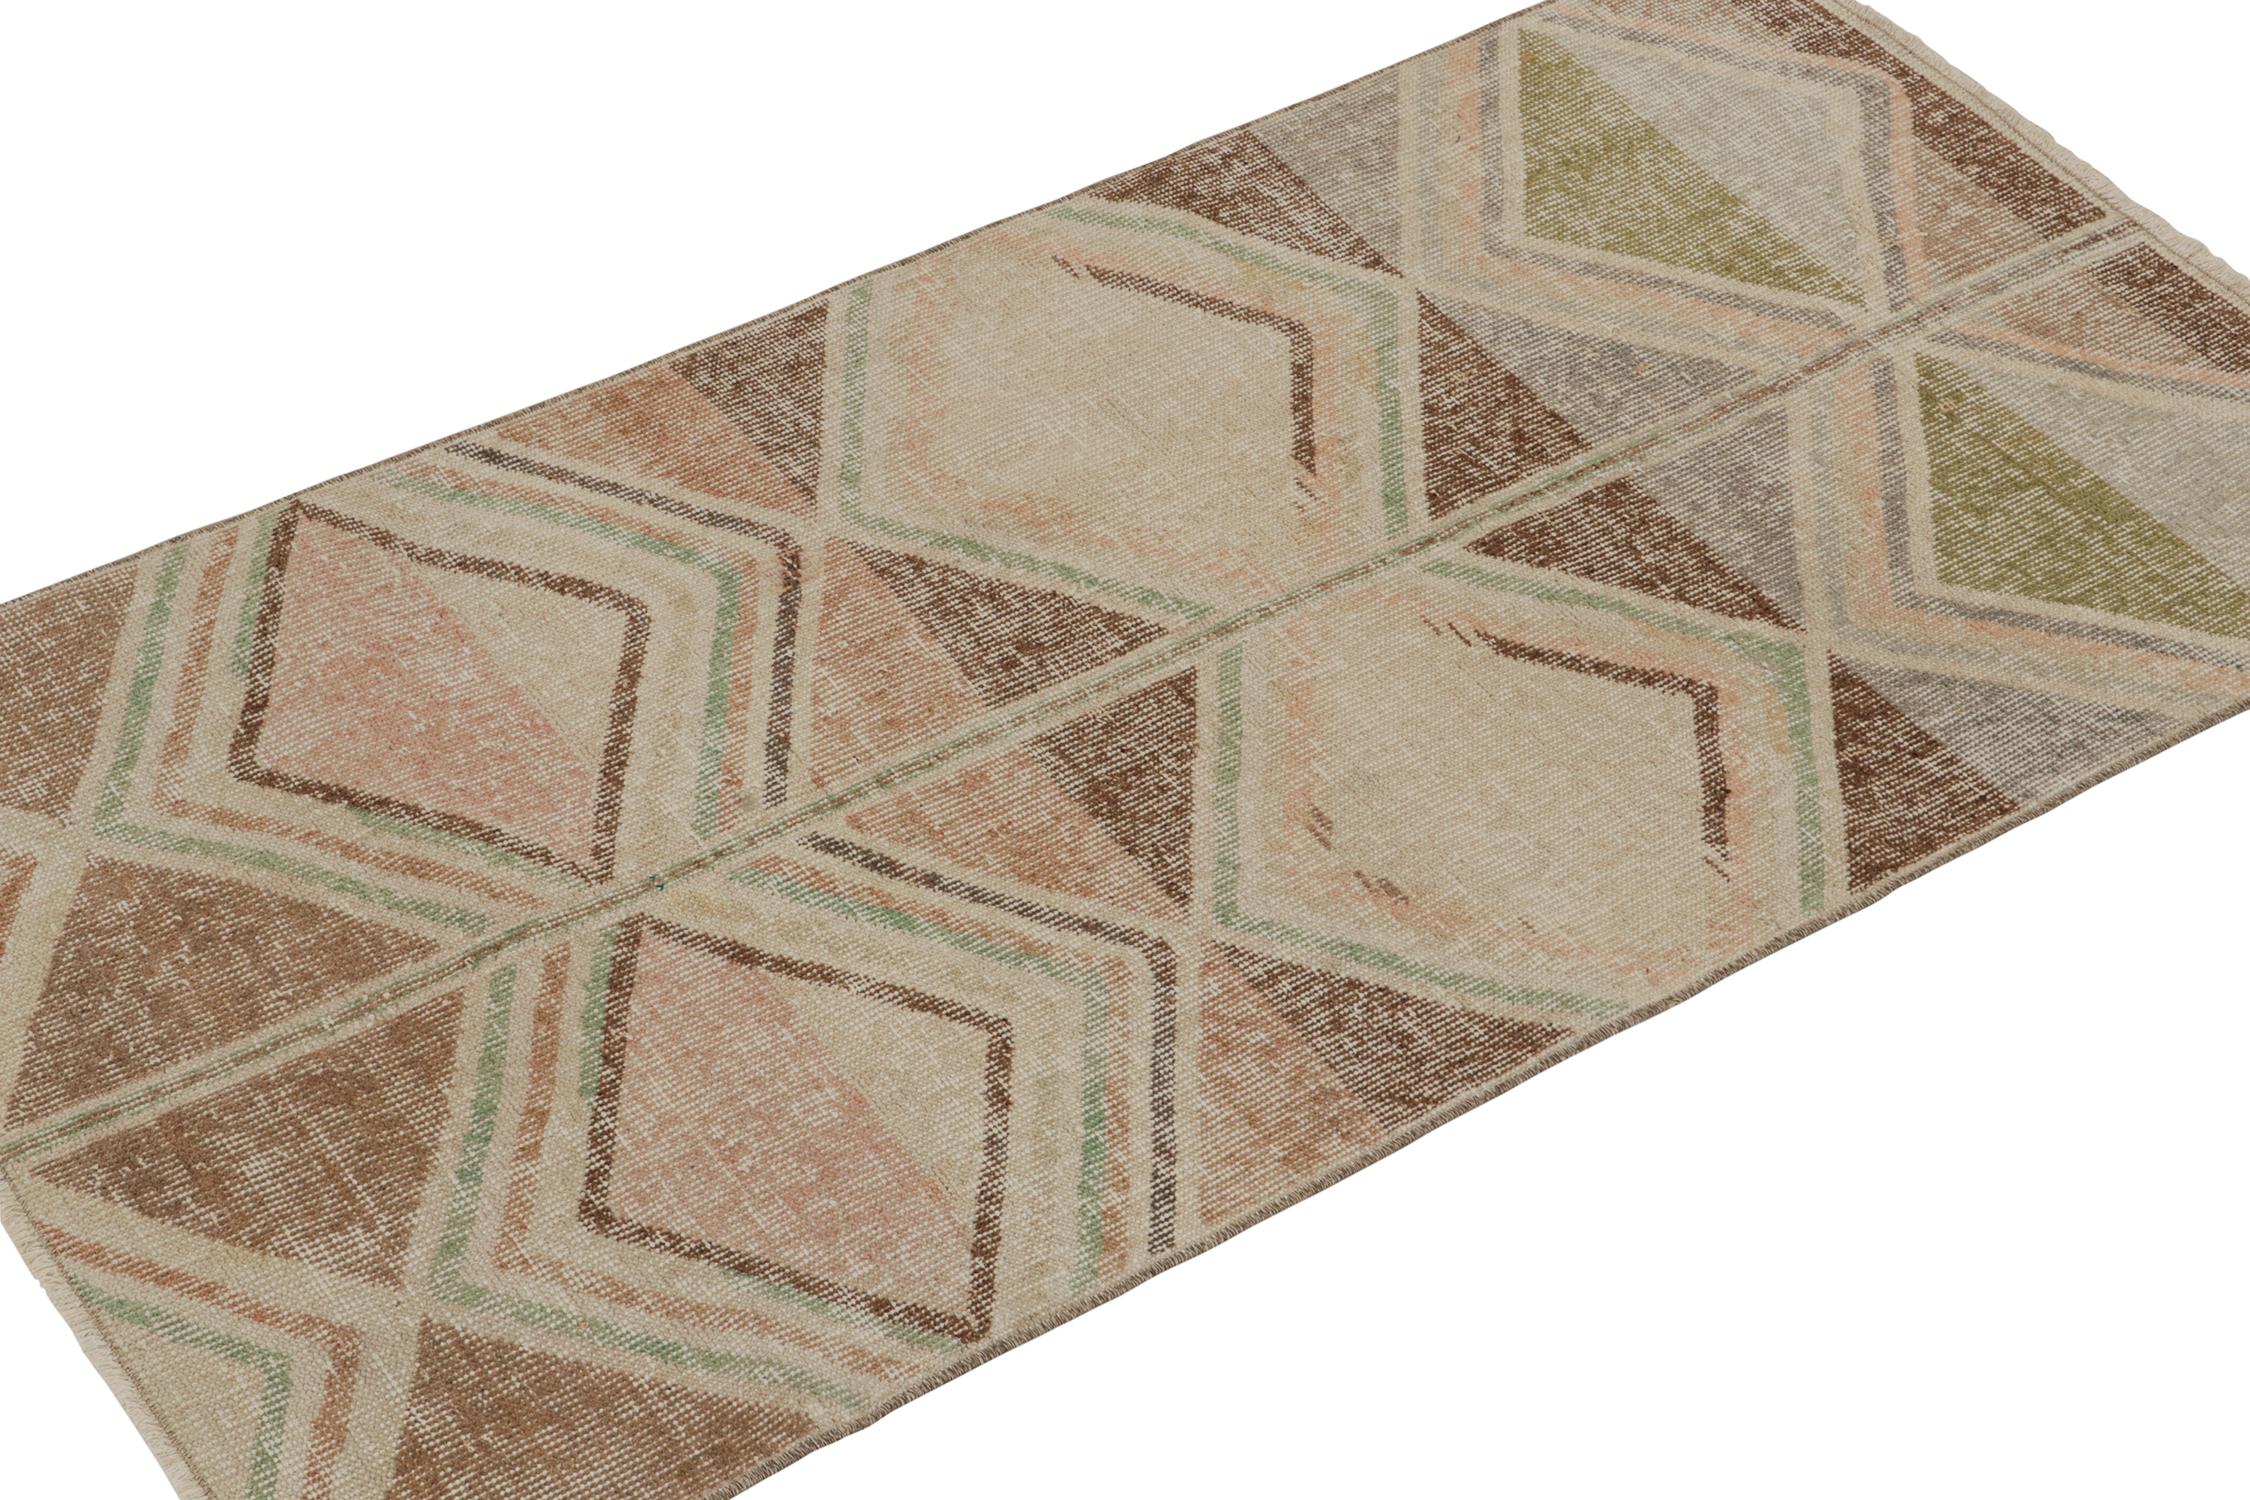 Ein alter 3x6-Teppich aus der Mid-Century Pasha Collection von Rug & Kilim, die die seltenen Werke der türkischen Multidisziplinär-Ikone Zeki Müren umfasst. 

Über das Design: Das Stück verkörpert, wenn nicht sogar beispielhaft, den innovativen